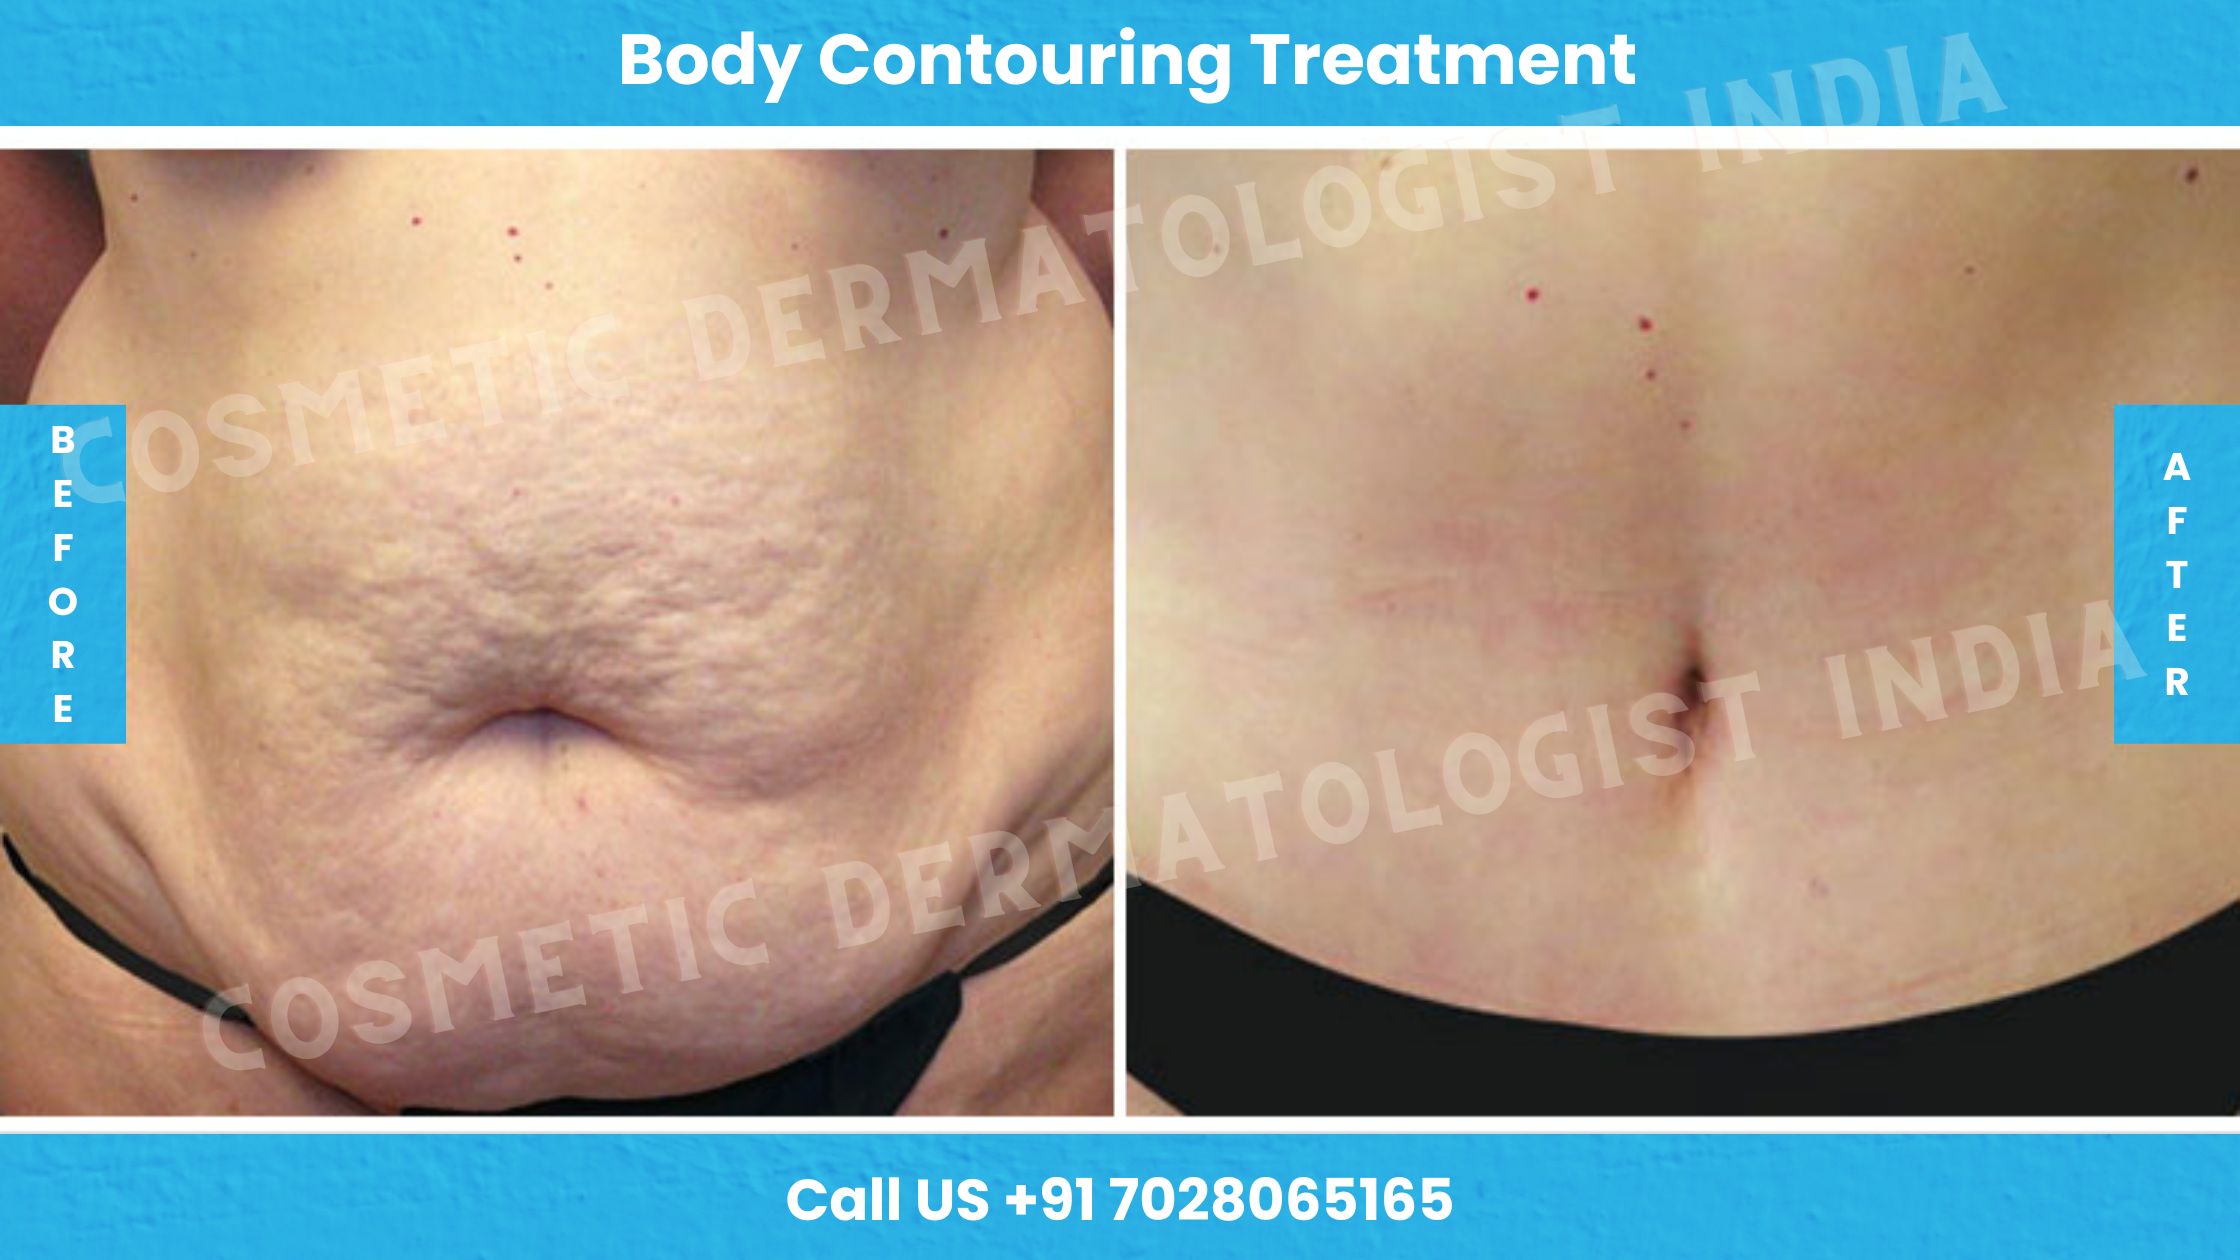 Body Contouring Treatment Mumbai- Non Surgical Body Contouring